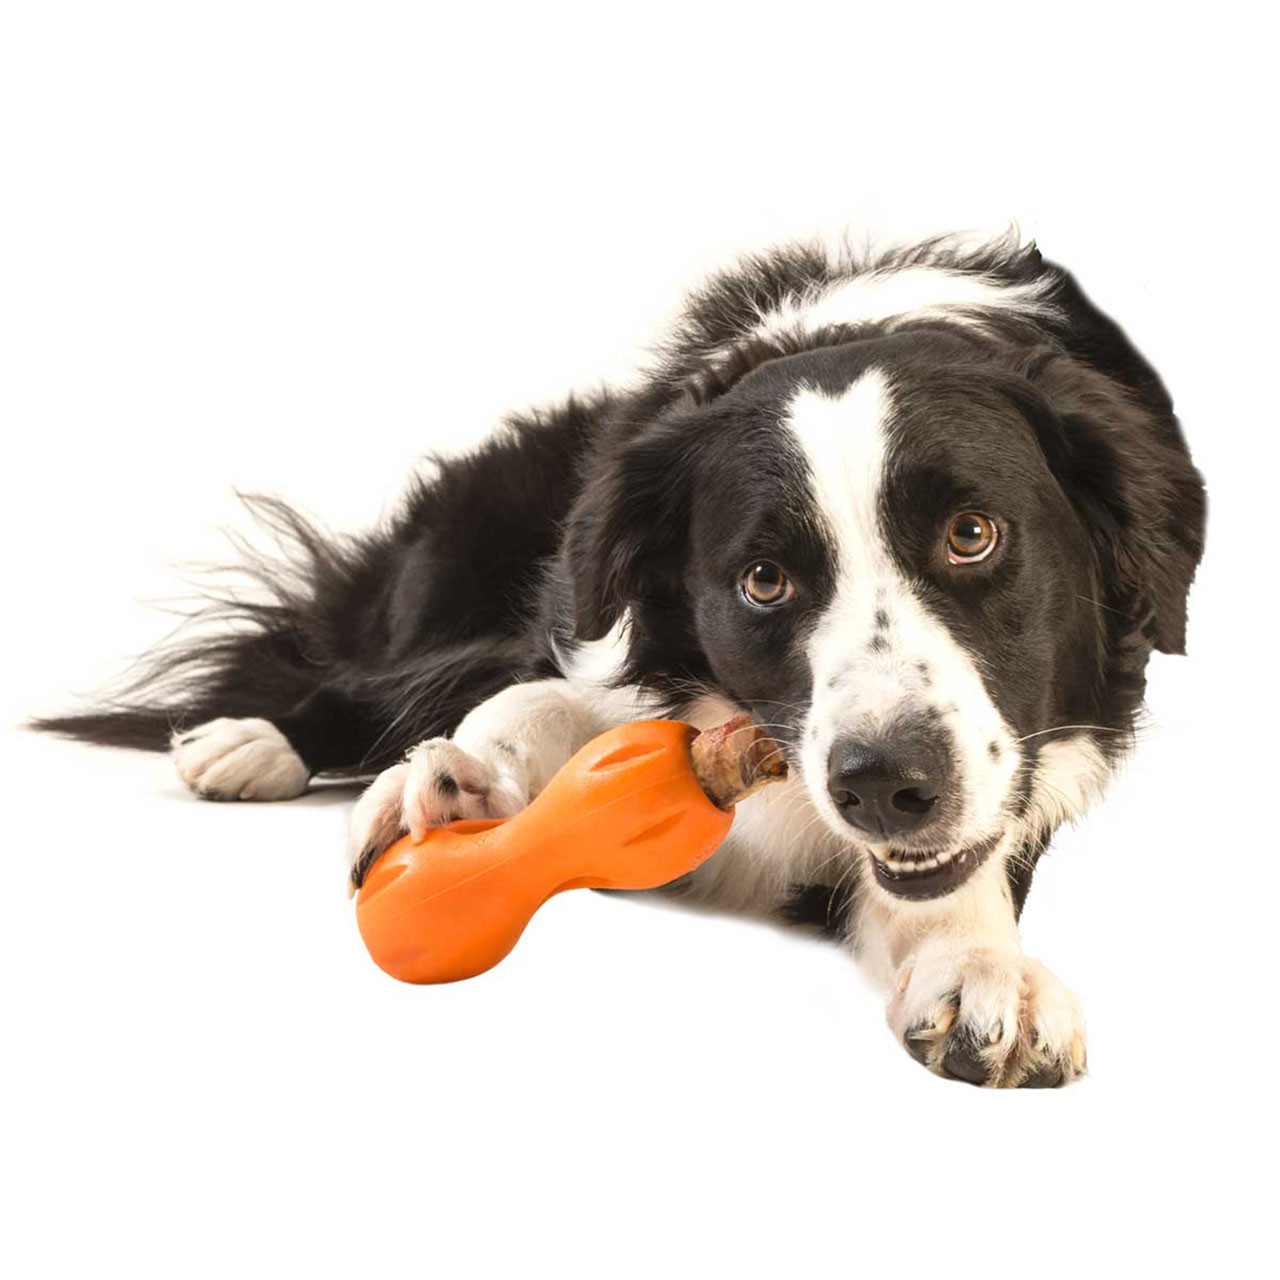 West Paw Tizzi Dog Toy - Large - Tangerine